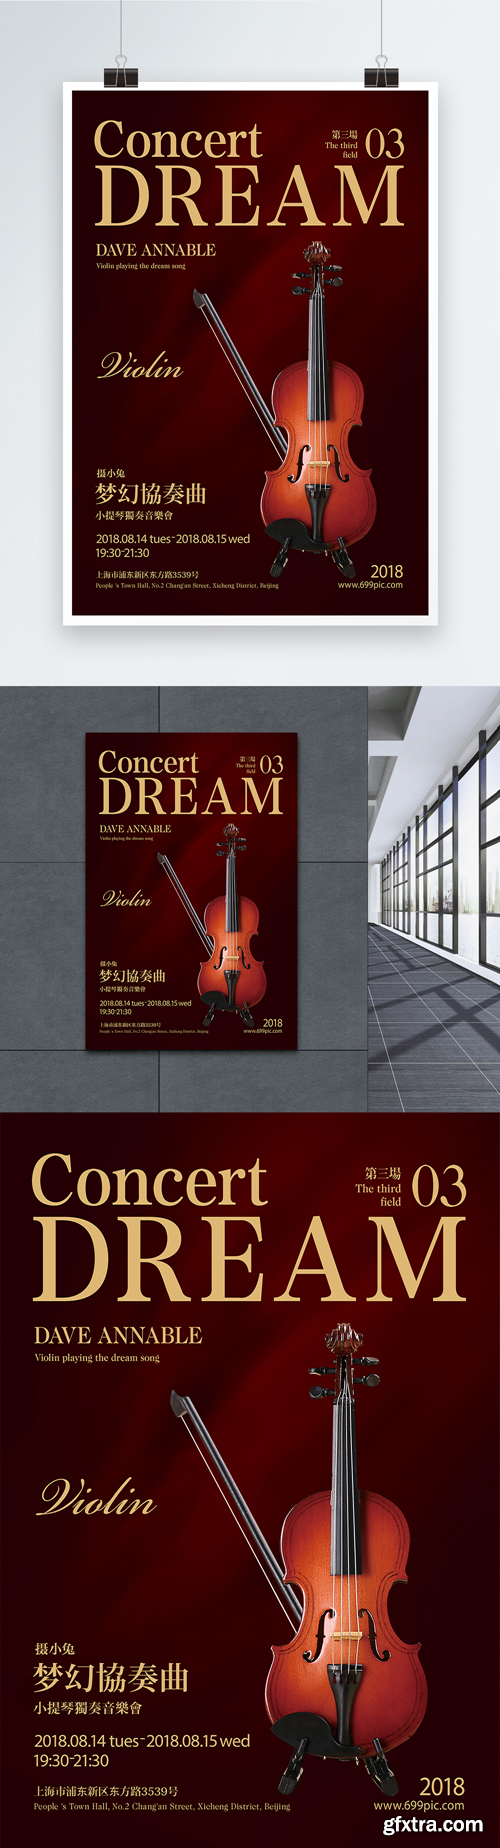 violin concert poster